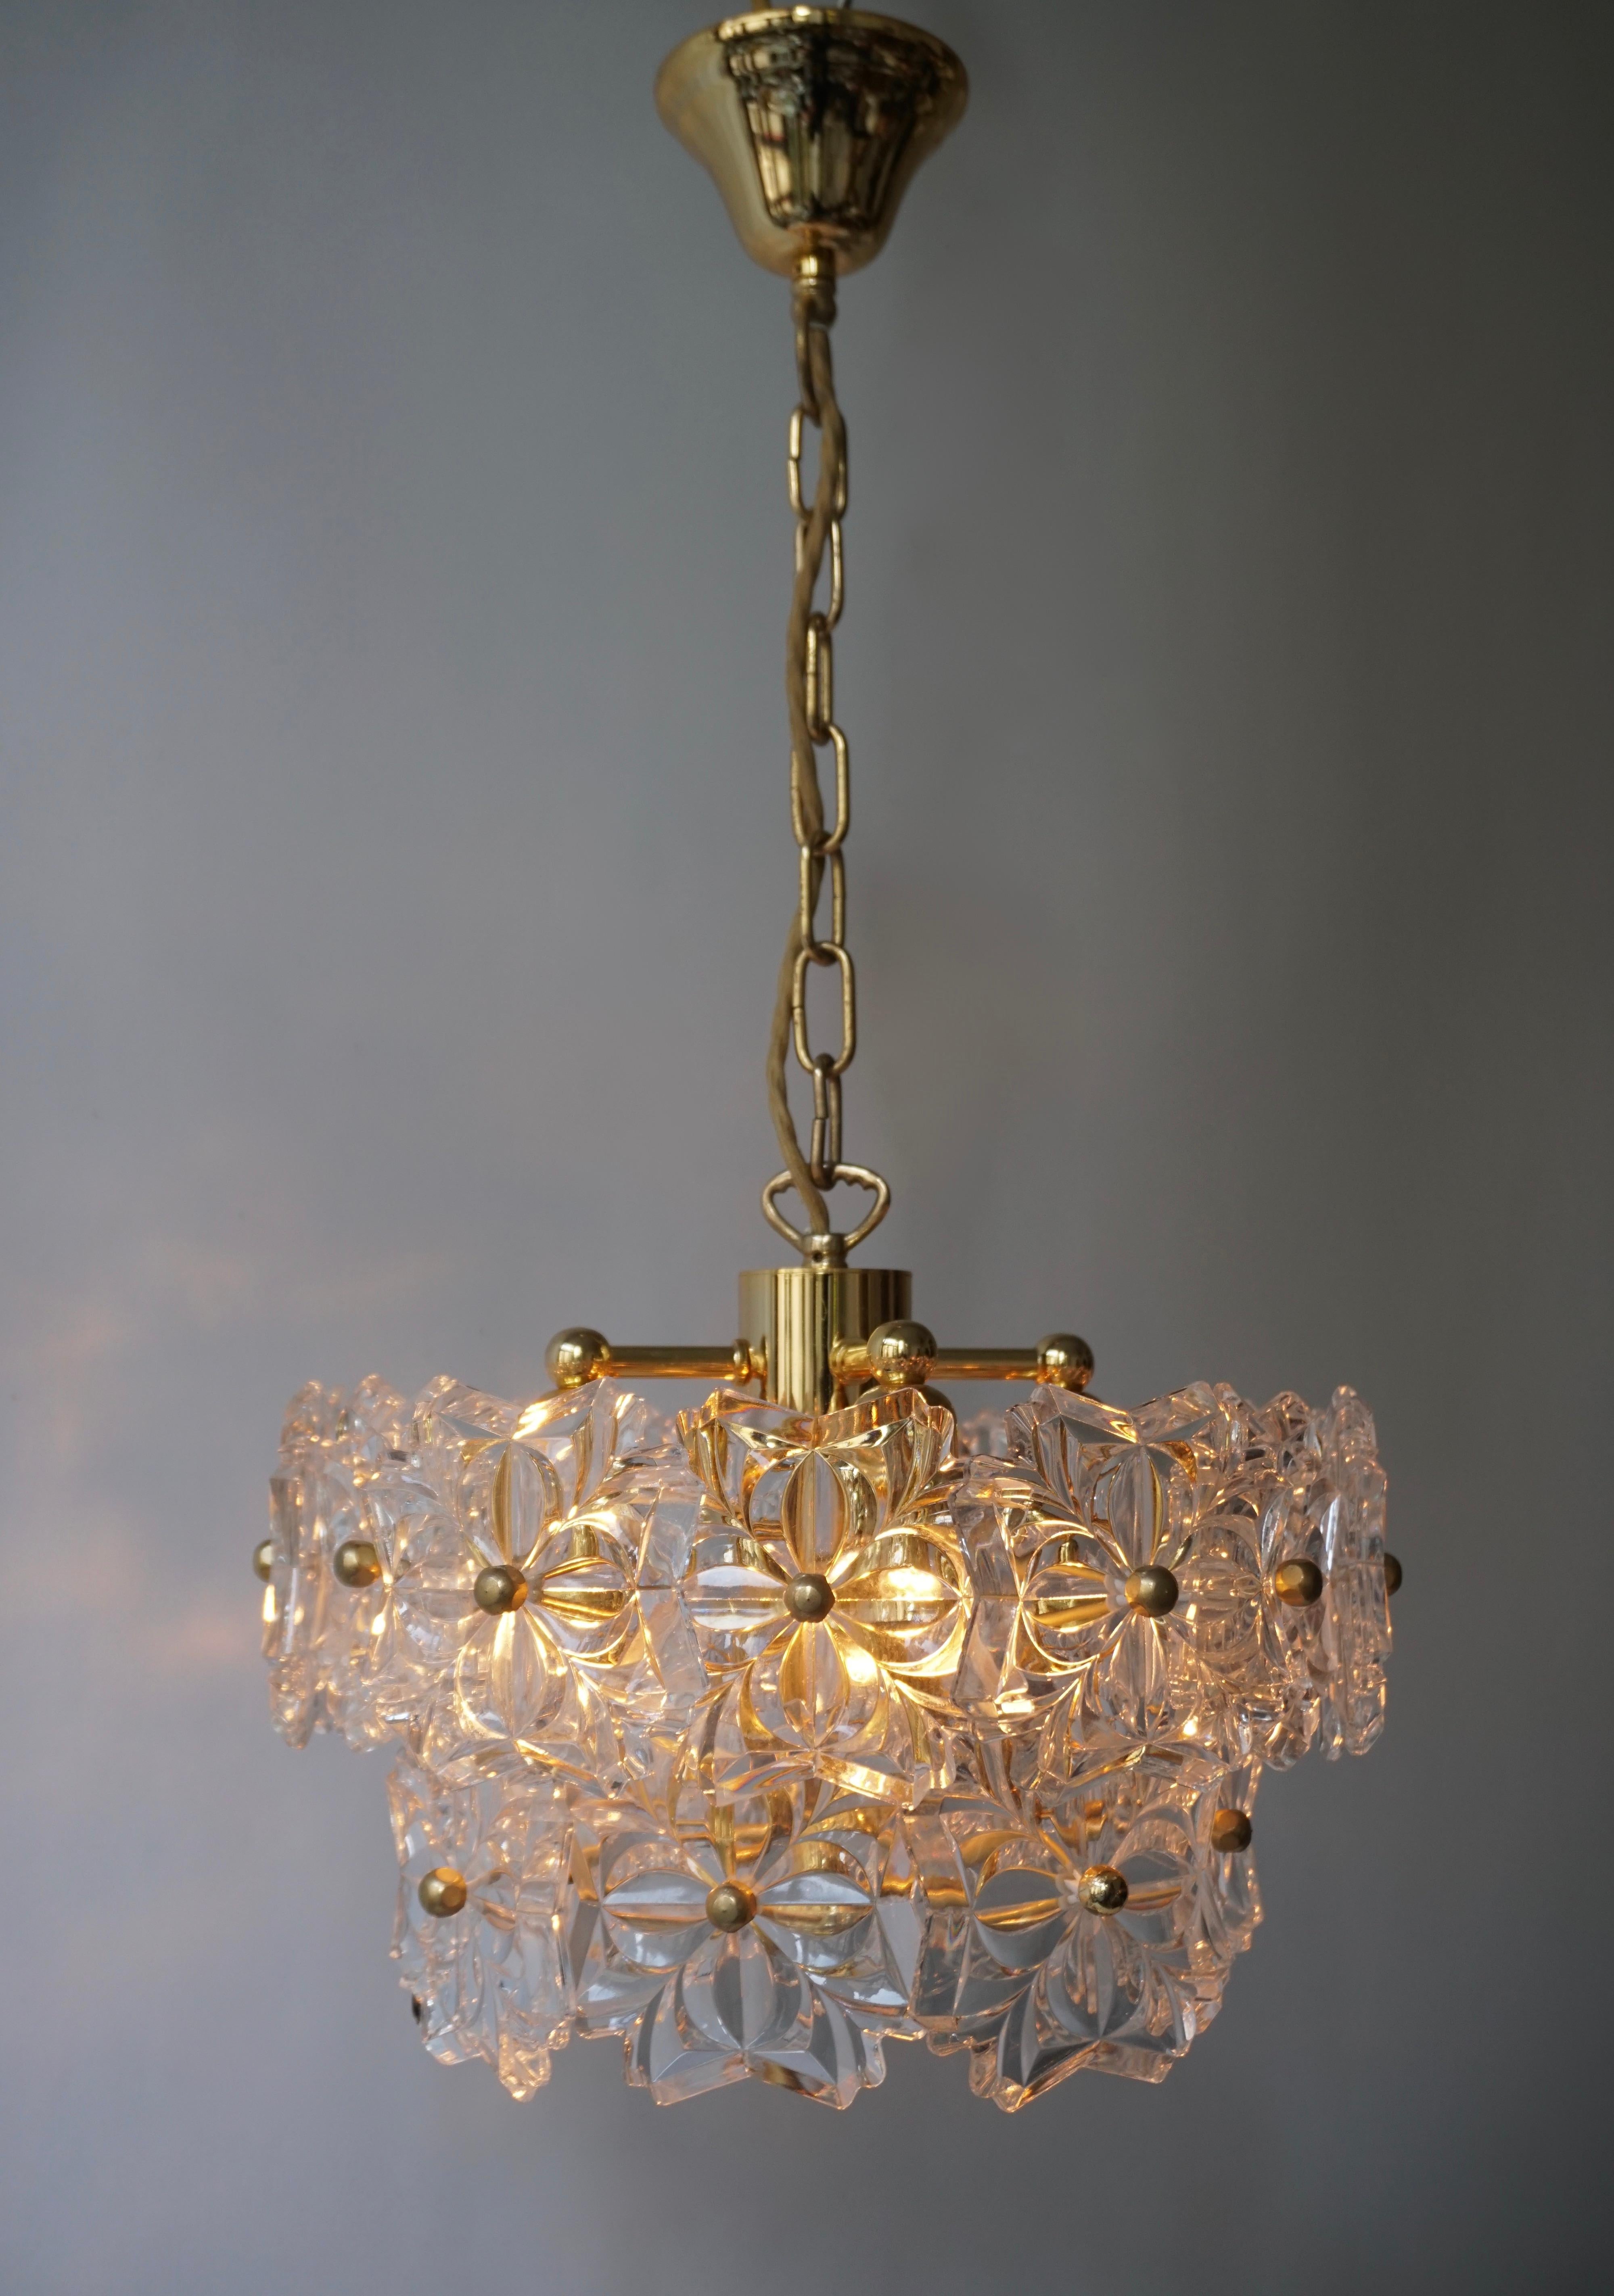 Lampe pendante italienne en laiton et verre de Murano.

Le luminaire nécessite quatre ampoules à vis E14 (45Watt max.) compatibles avec les LED.
Diamètre 35 cm.
Hauteur de la fixation 24 cm.
Hauteur totale 60 cm.